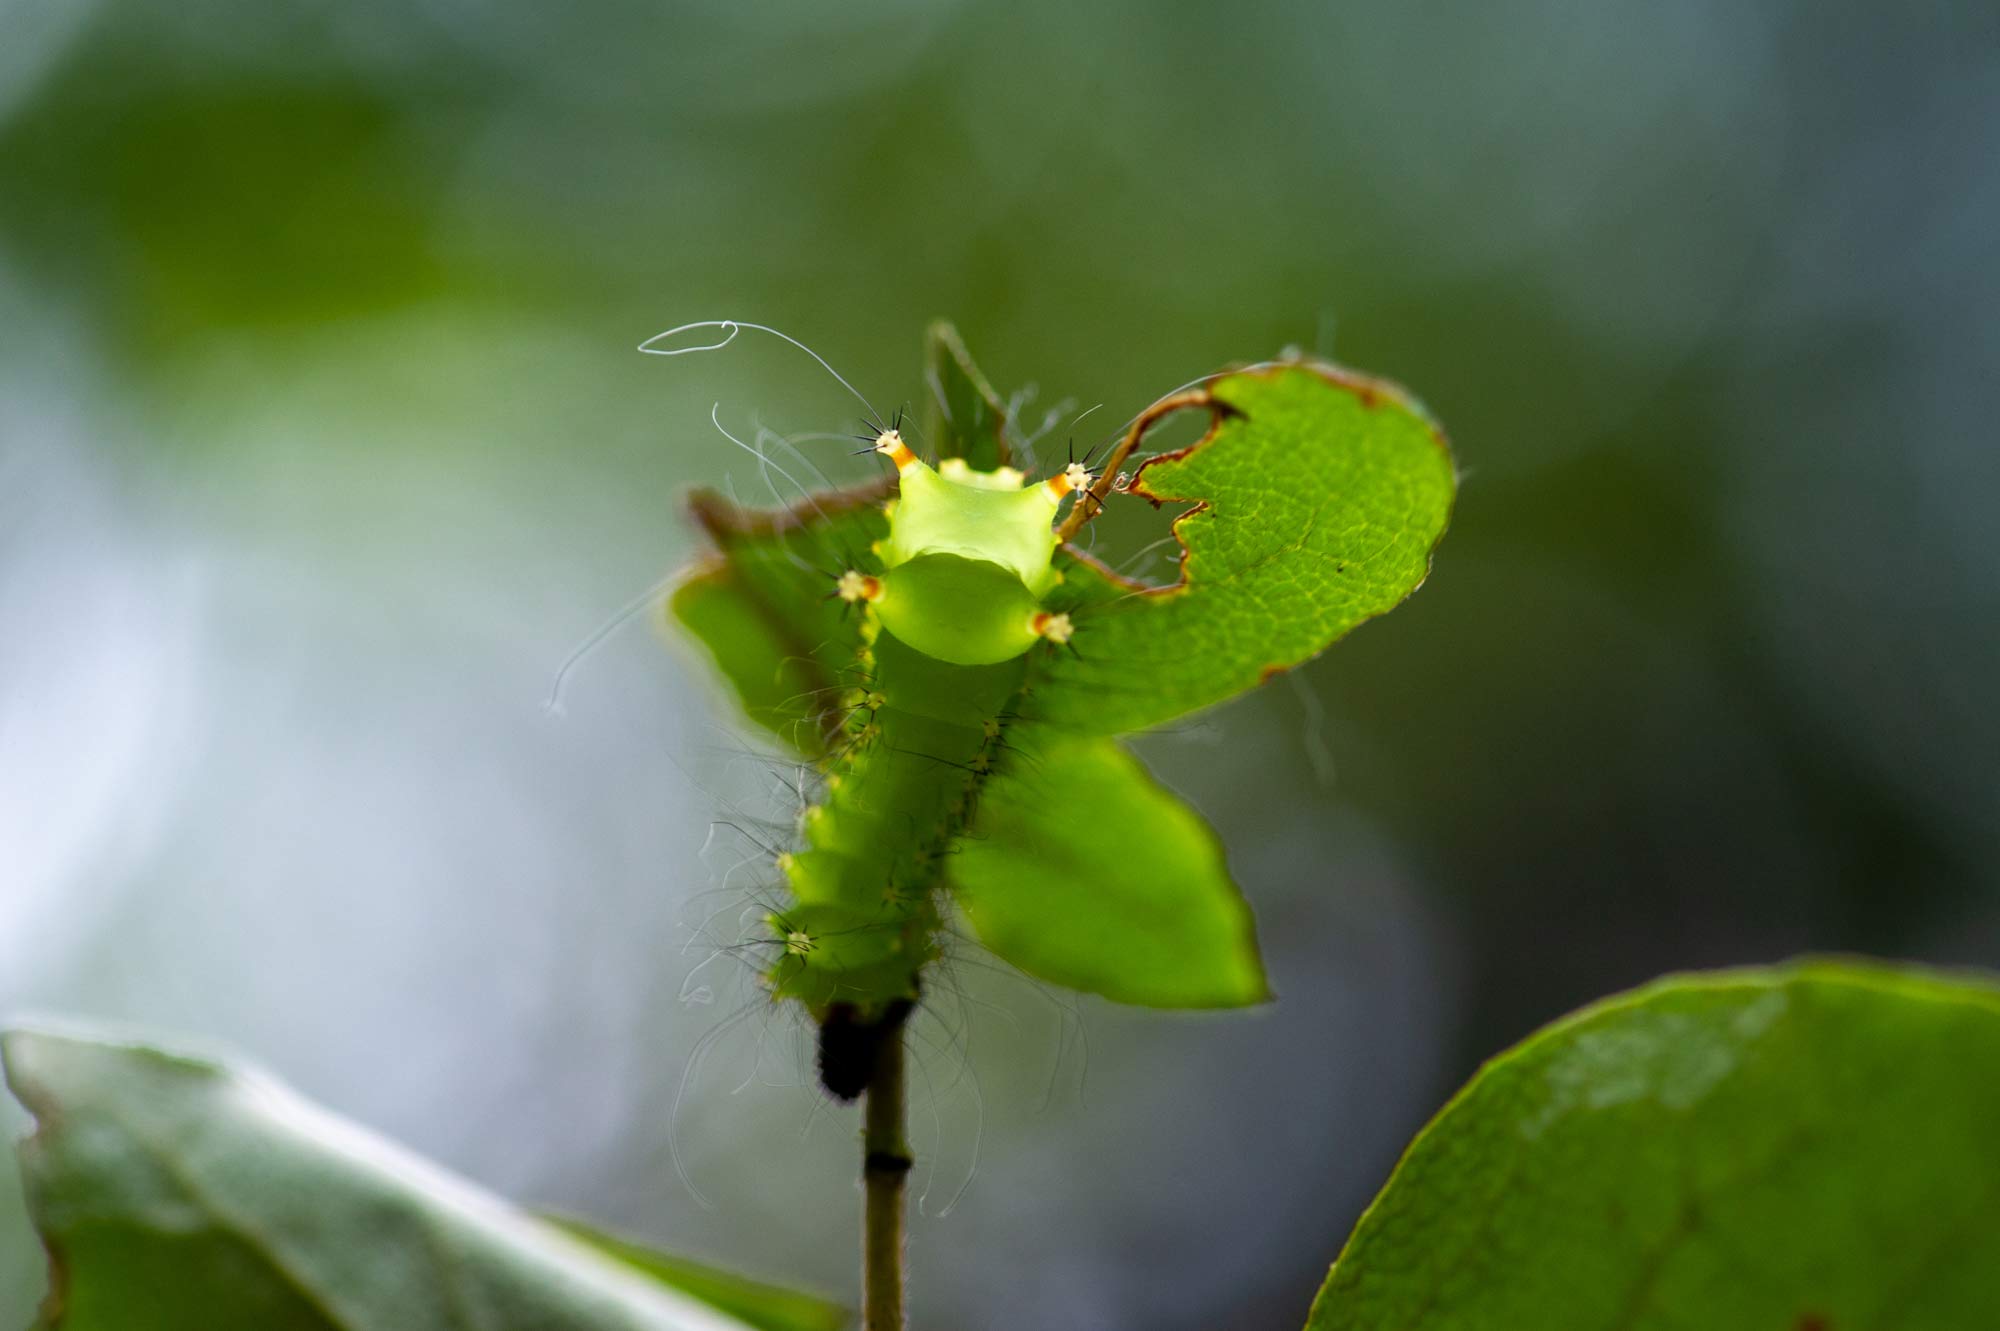 オオミズアオの特徴や見分け方 幼虫も写真で紹介 虫の写真と生態なら昆虫写真図鑑 ムシミル